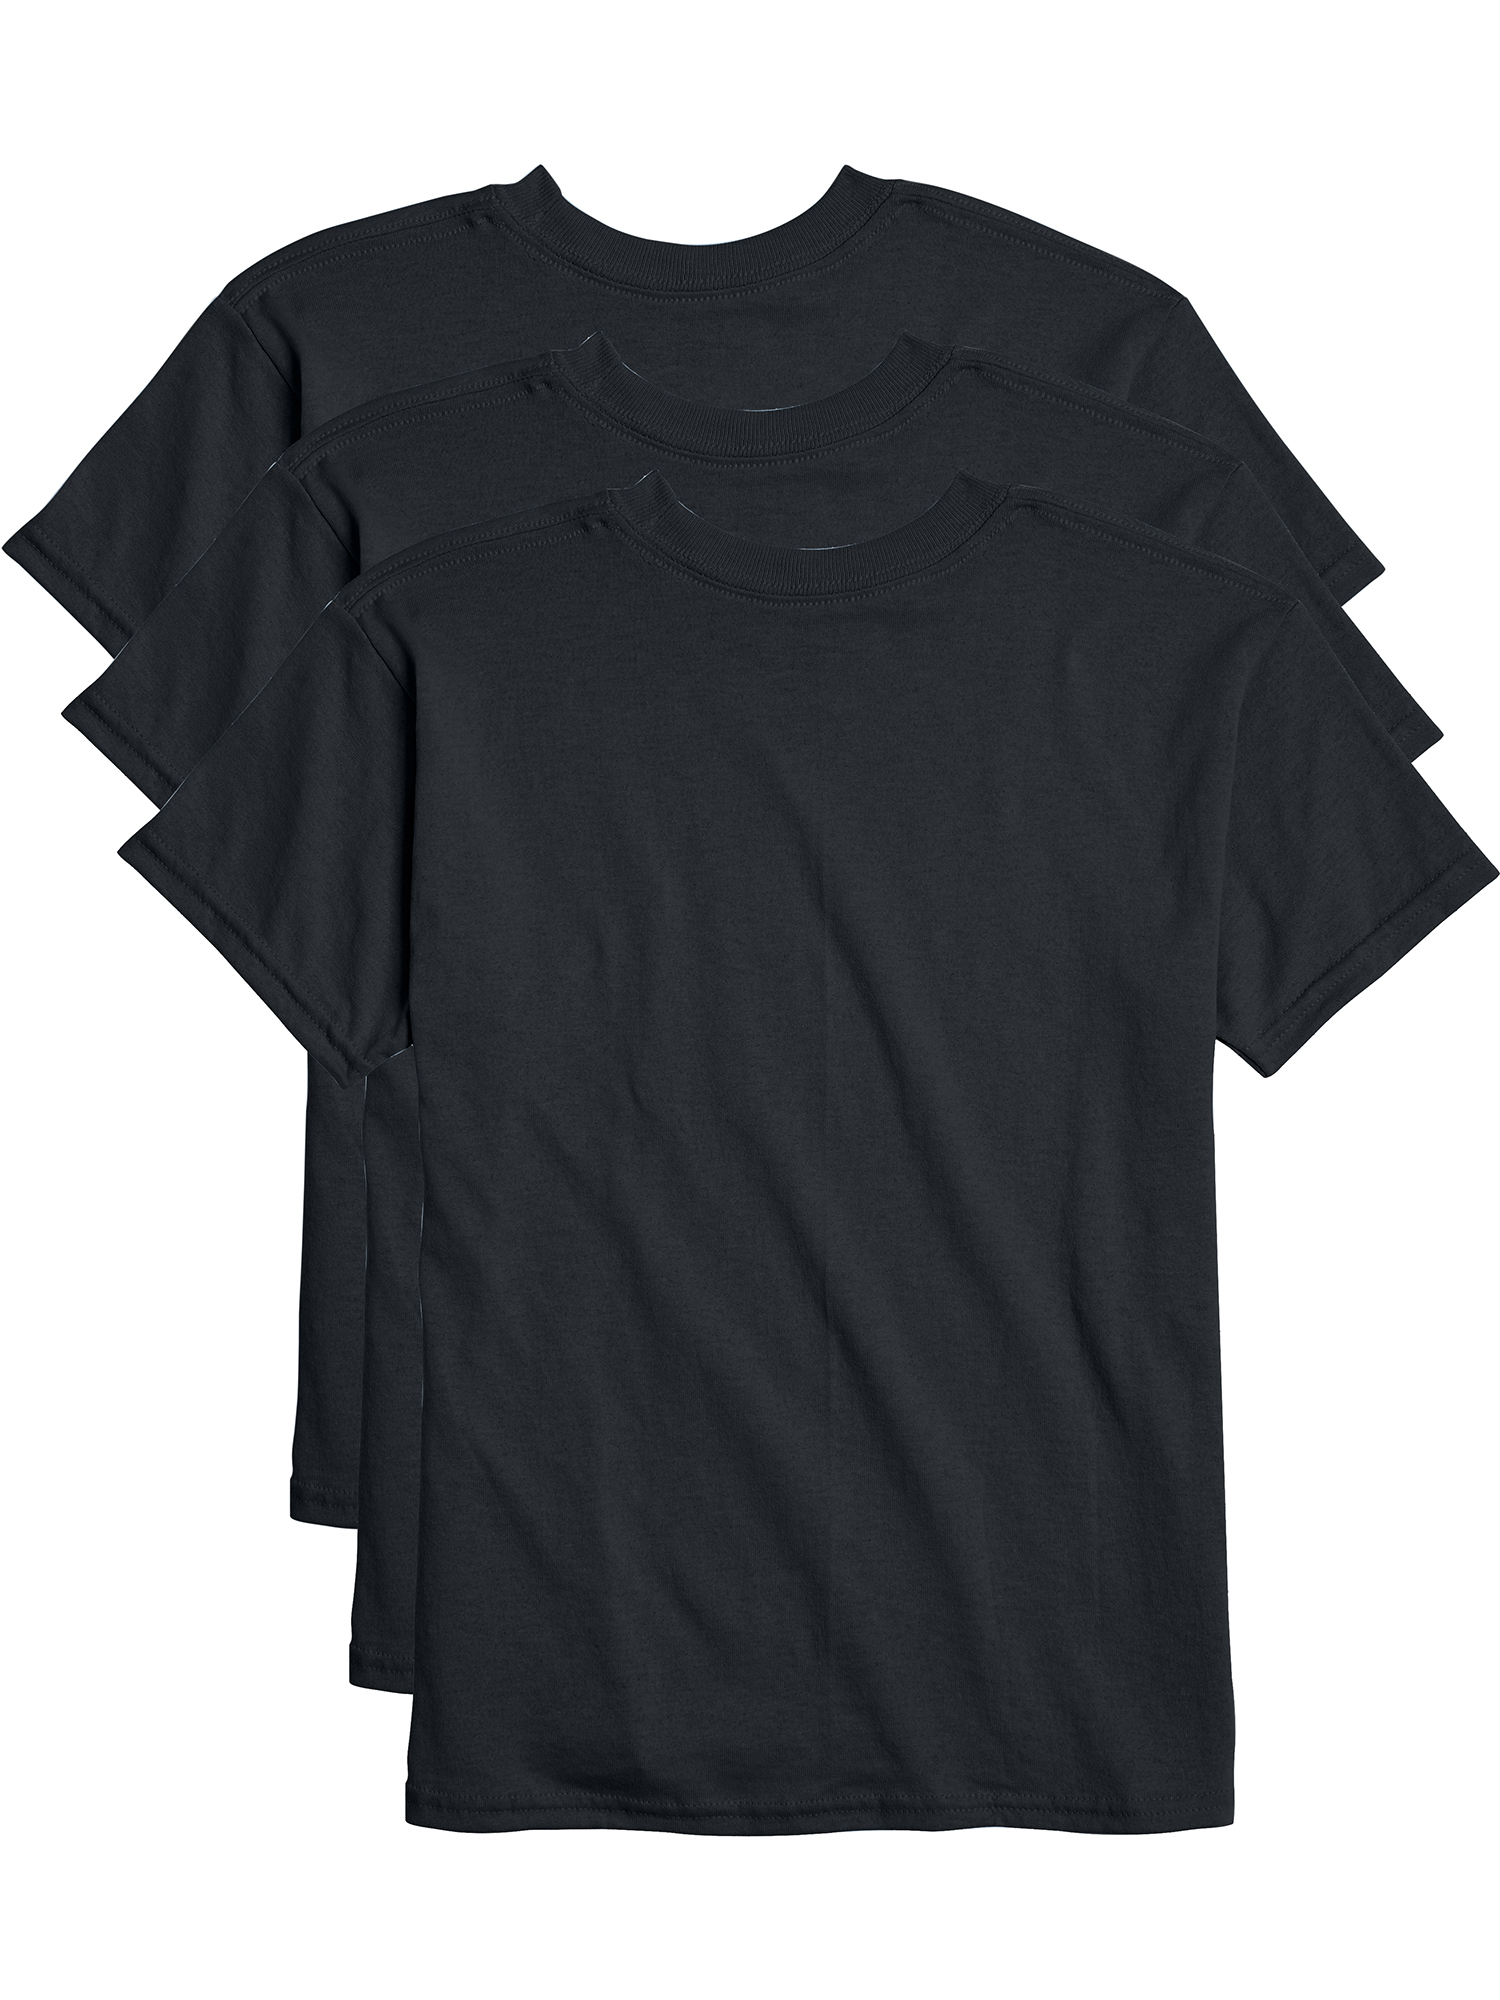 Hanes Boys EcoSmart Short Sleeve 3 Pack Tee Shirts, Sizes 6-18 - image 4 of 5